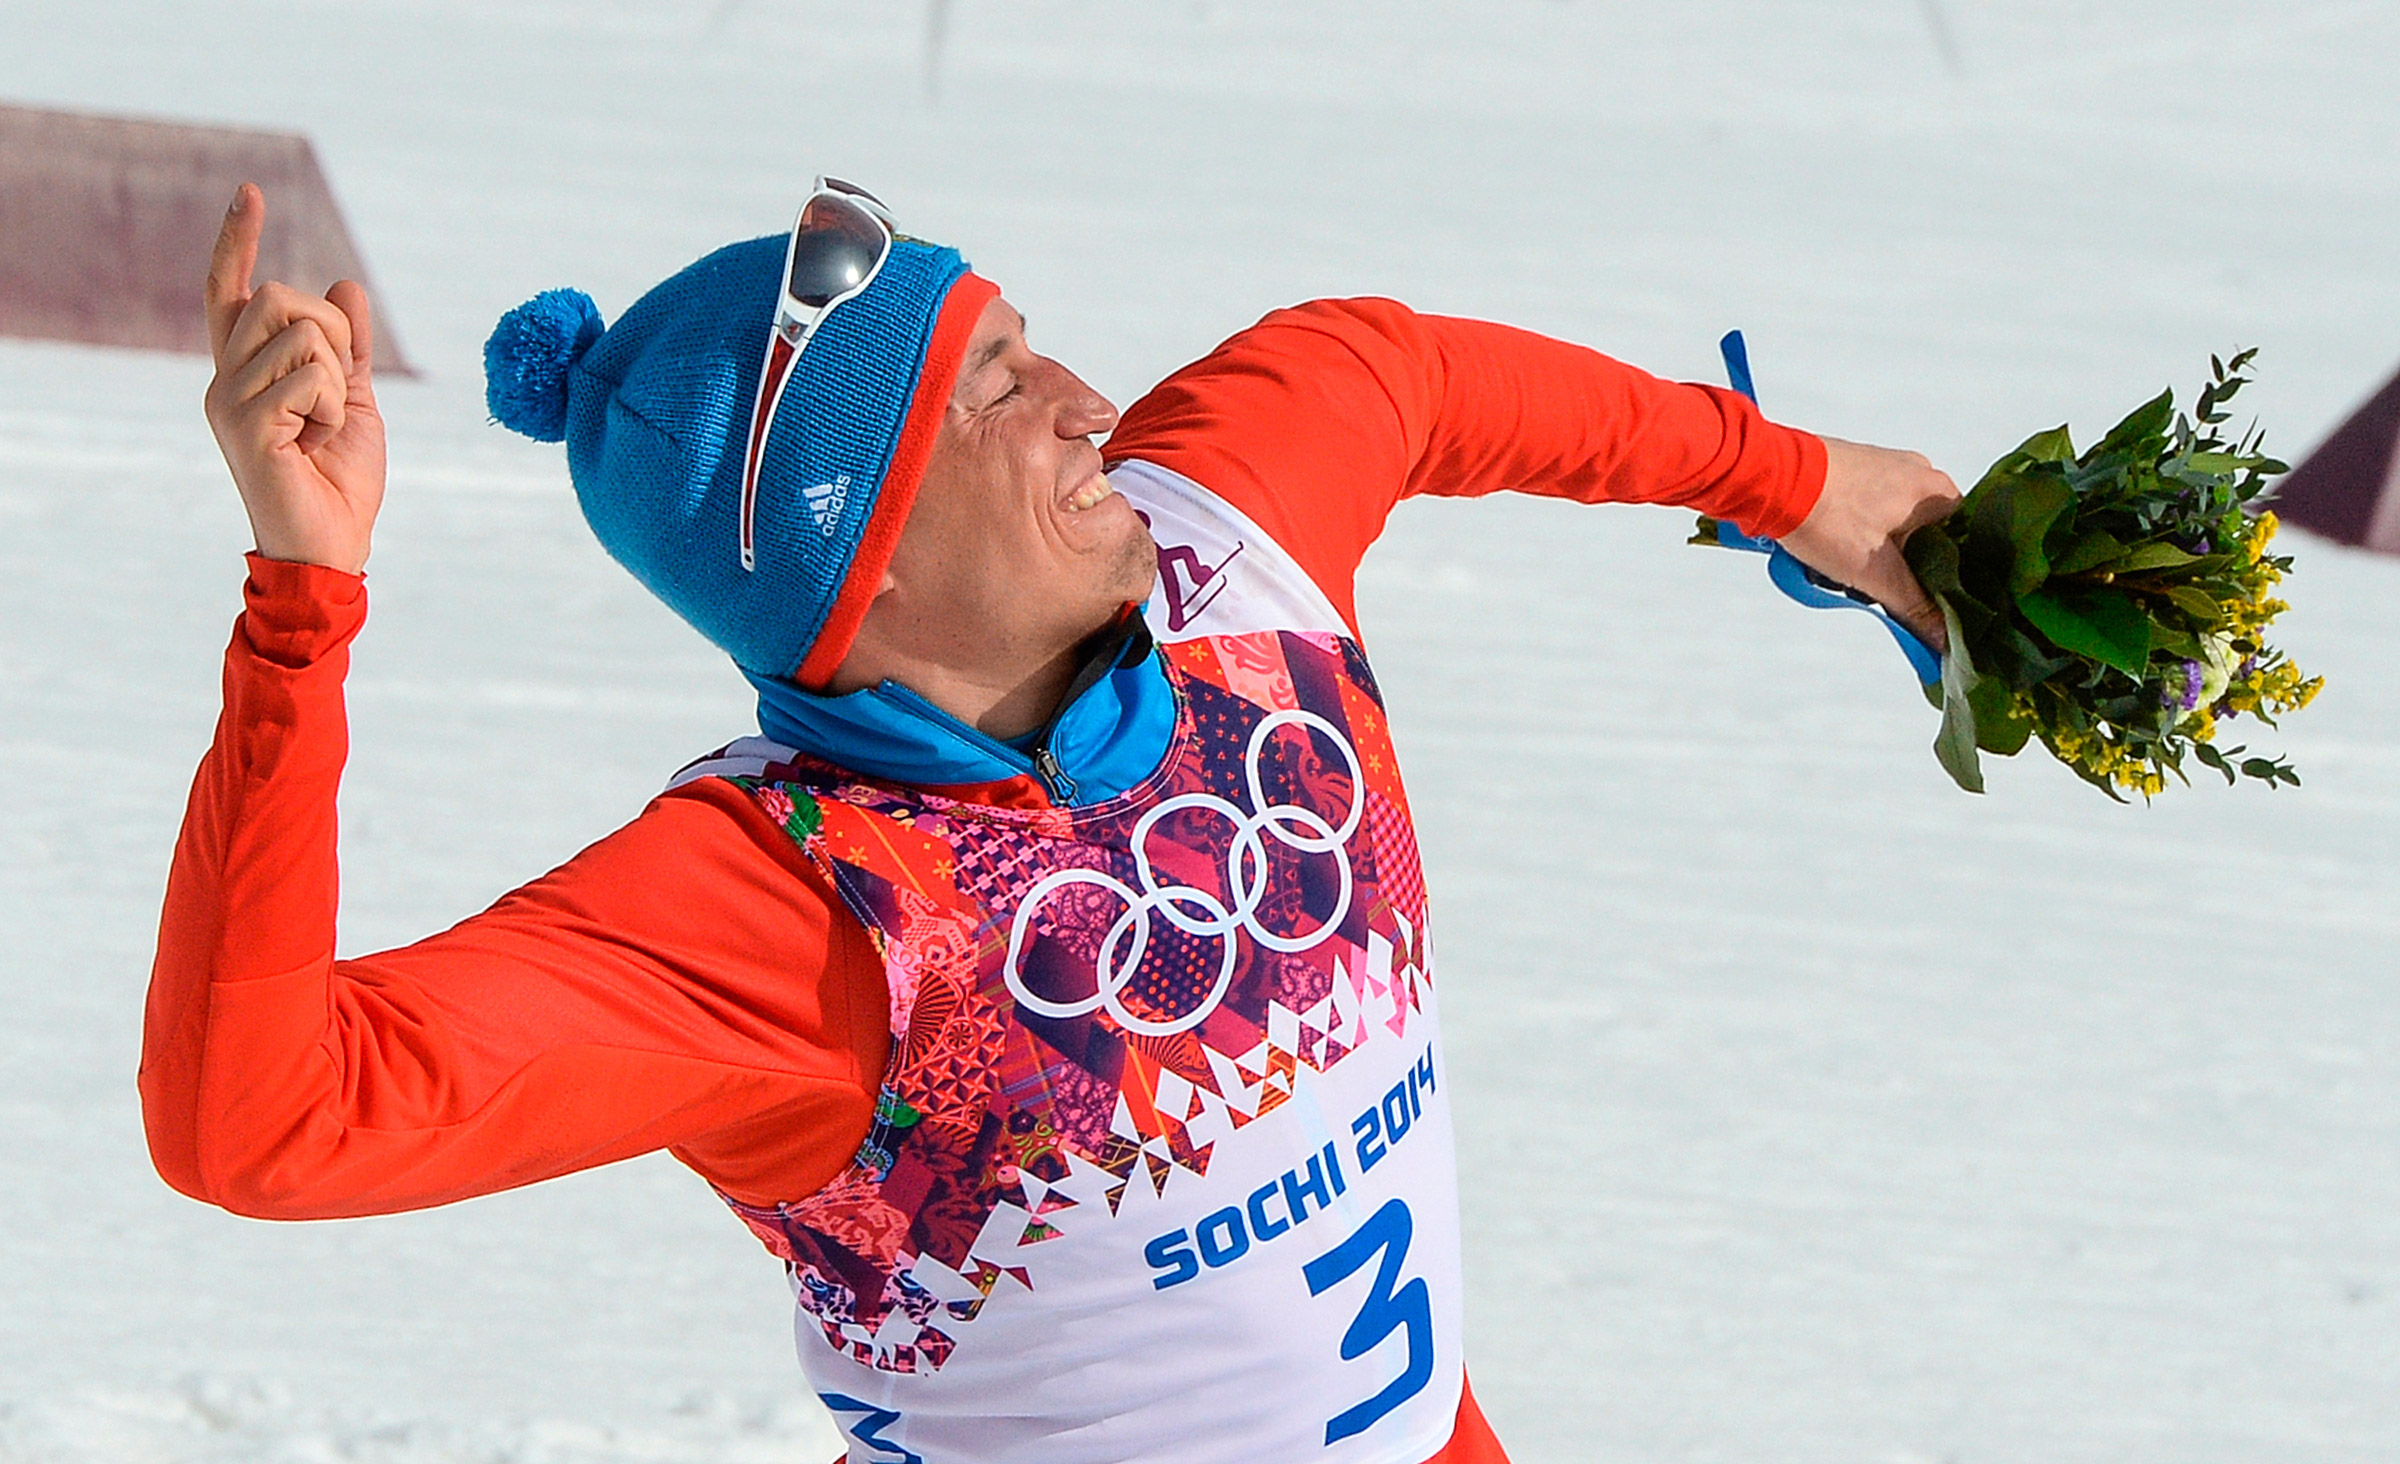 Александр Легков &mdash; один из самых титулованных российских лыжников. Он стал первым россиянином, выигравшим &laquo;Тур де Ски&raquo; (проводимая в восемь этапов гонка, включающая забег в гору, масс-старт, гонку-преследование и другие виды. &mdash; РБК) в сезоне 2012/13, а также завоевал серебро и бронзу в составе эстафетных команд на чемпионатах мира 2007 и 2013 годов. В 2014 году на Олимпийских играх в Сочи Легков выиграл золото &laquo;королевской&raquo; гонки на 50&nbsp;км и серебро эстафеты.
